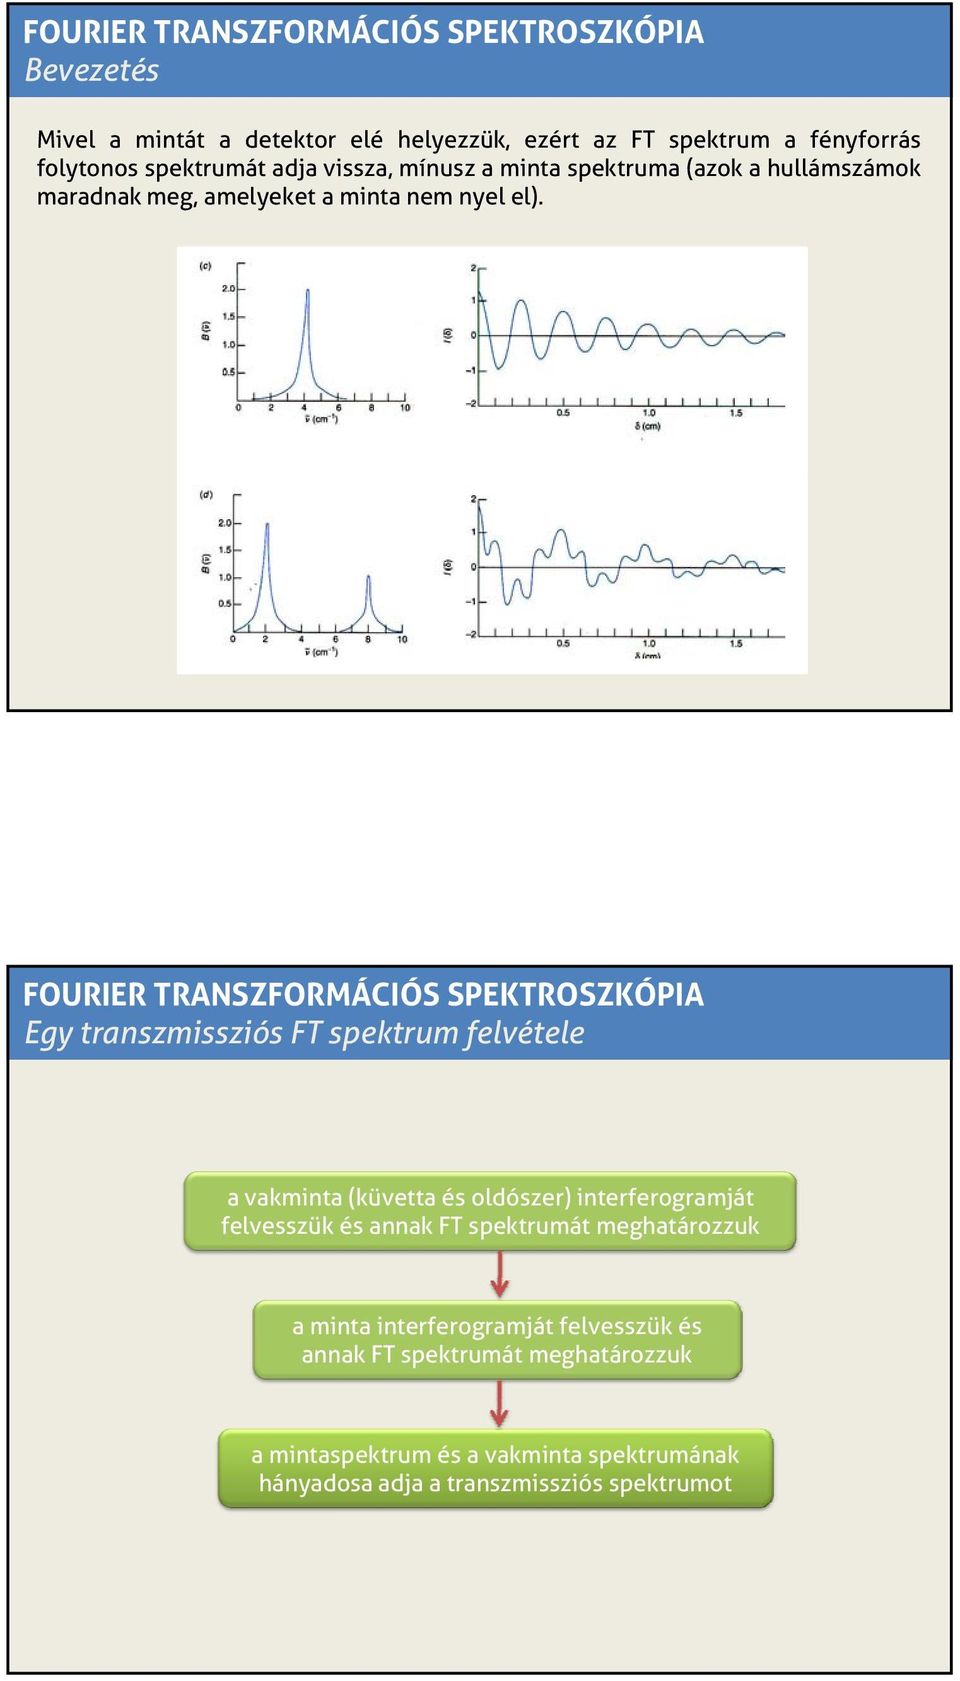 FOURIER TRANSZFORMÁCIÓS SPEKTROSZKÓPIA Egy transzmissziós FT spektrum felvétele a vakminta (küvetta és oldószer) interferogramját felvesszük és